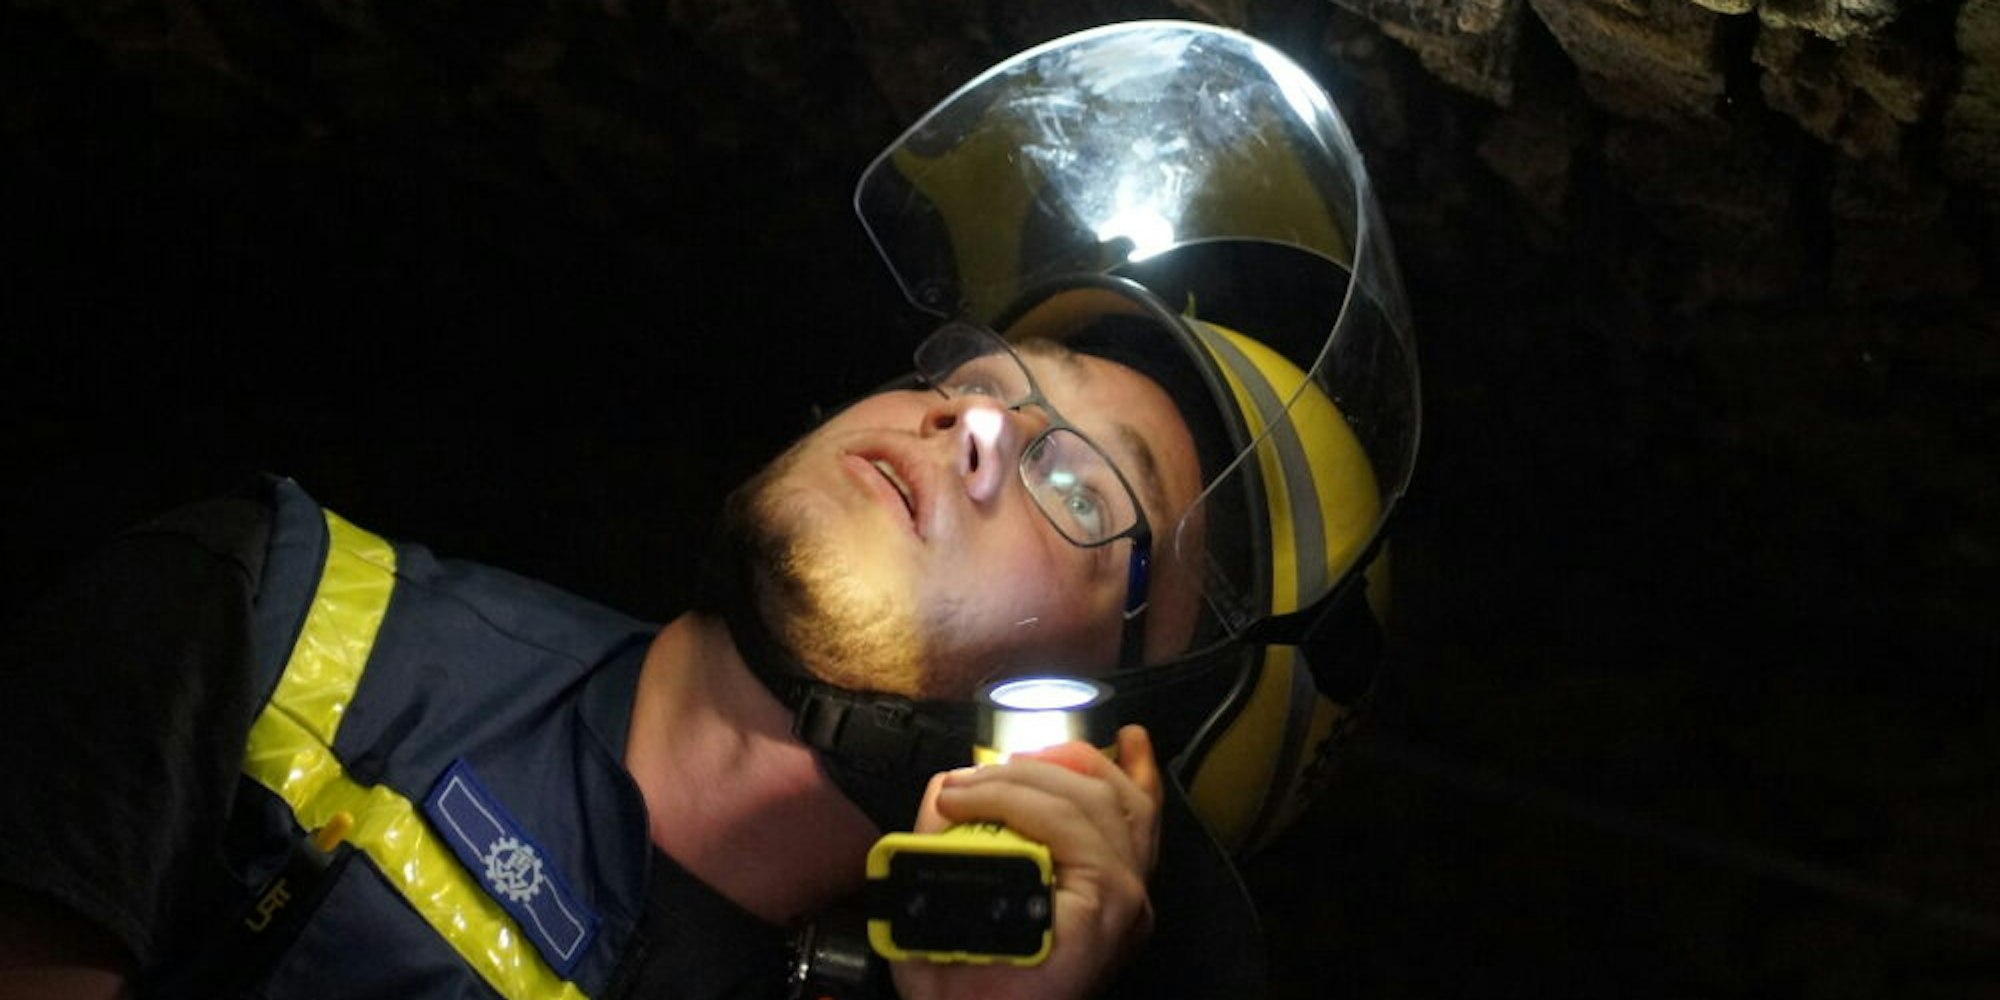 Erkennt gefährliche Stellen sofort: Baufachberater Marvin Fechler in einem Gewölbekeller in der Stumpfgasse.